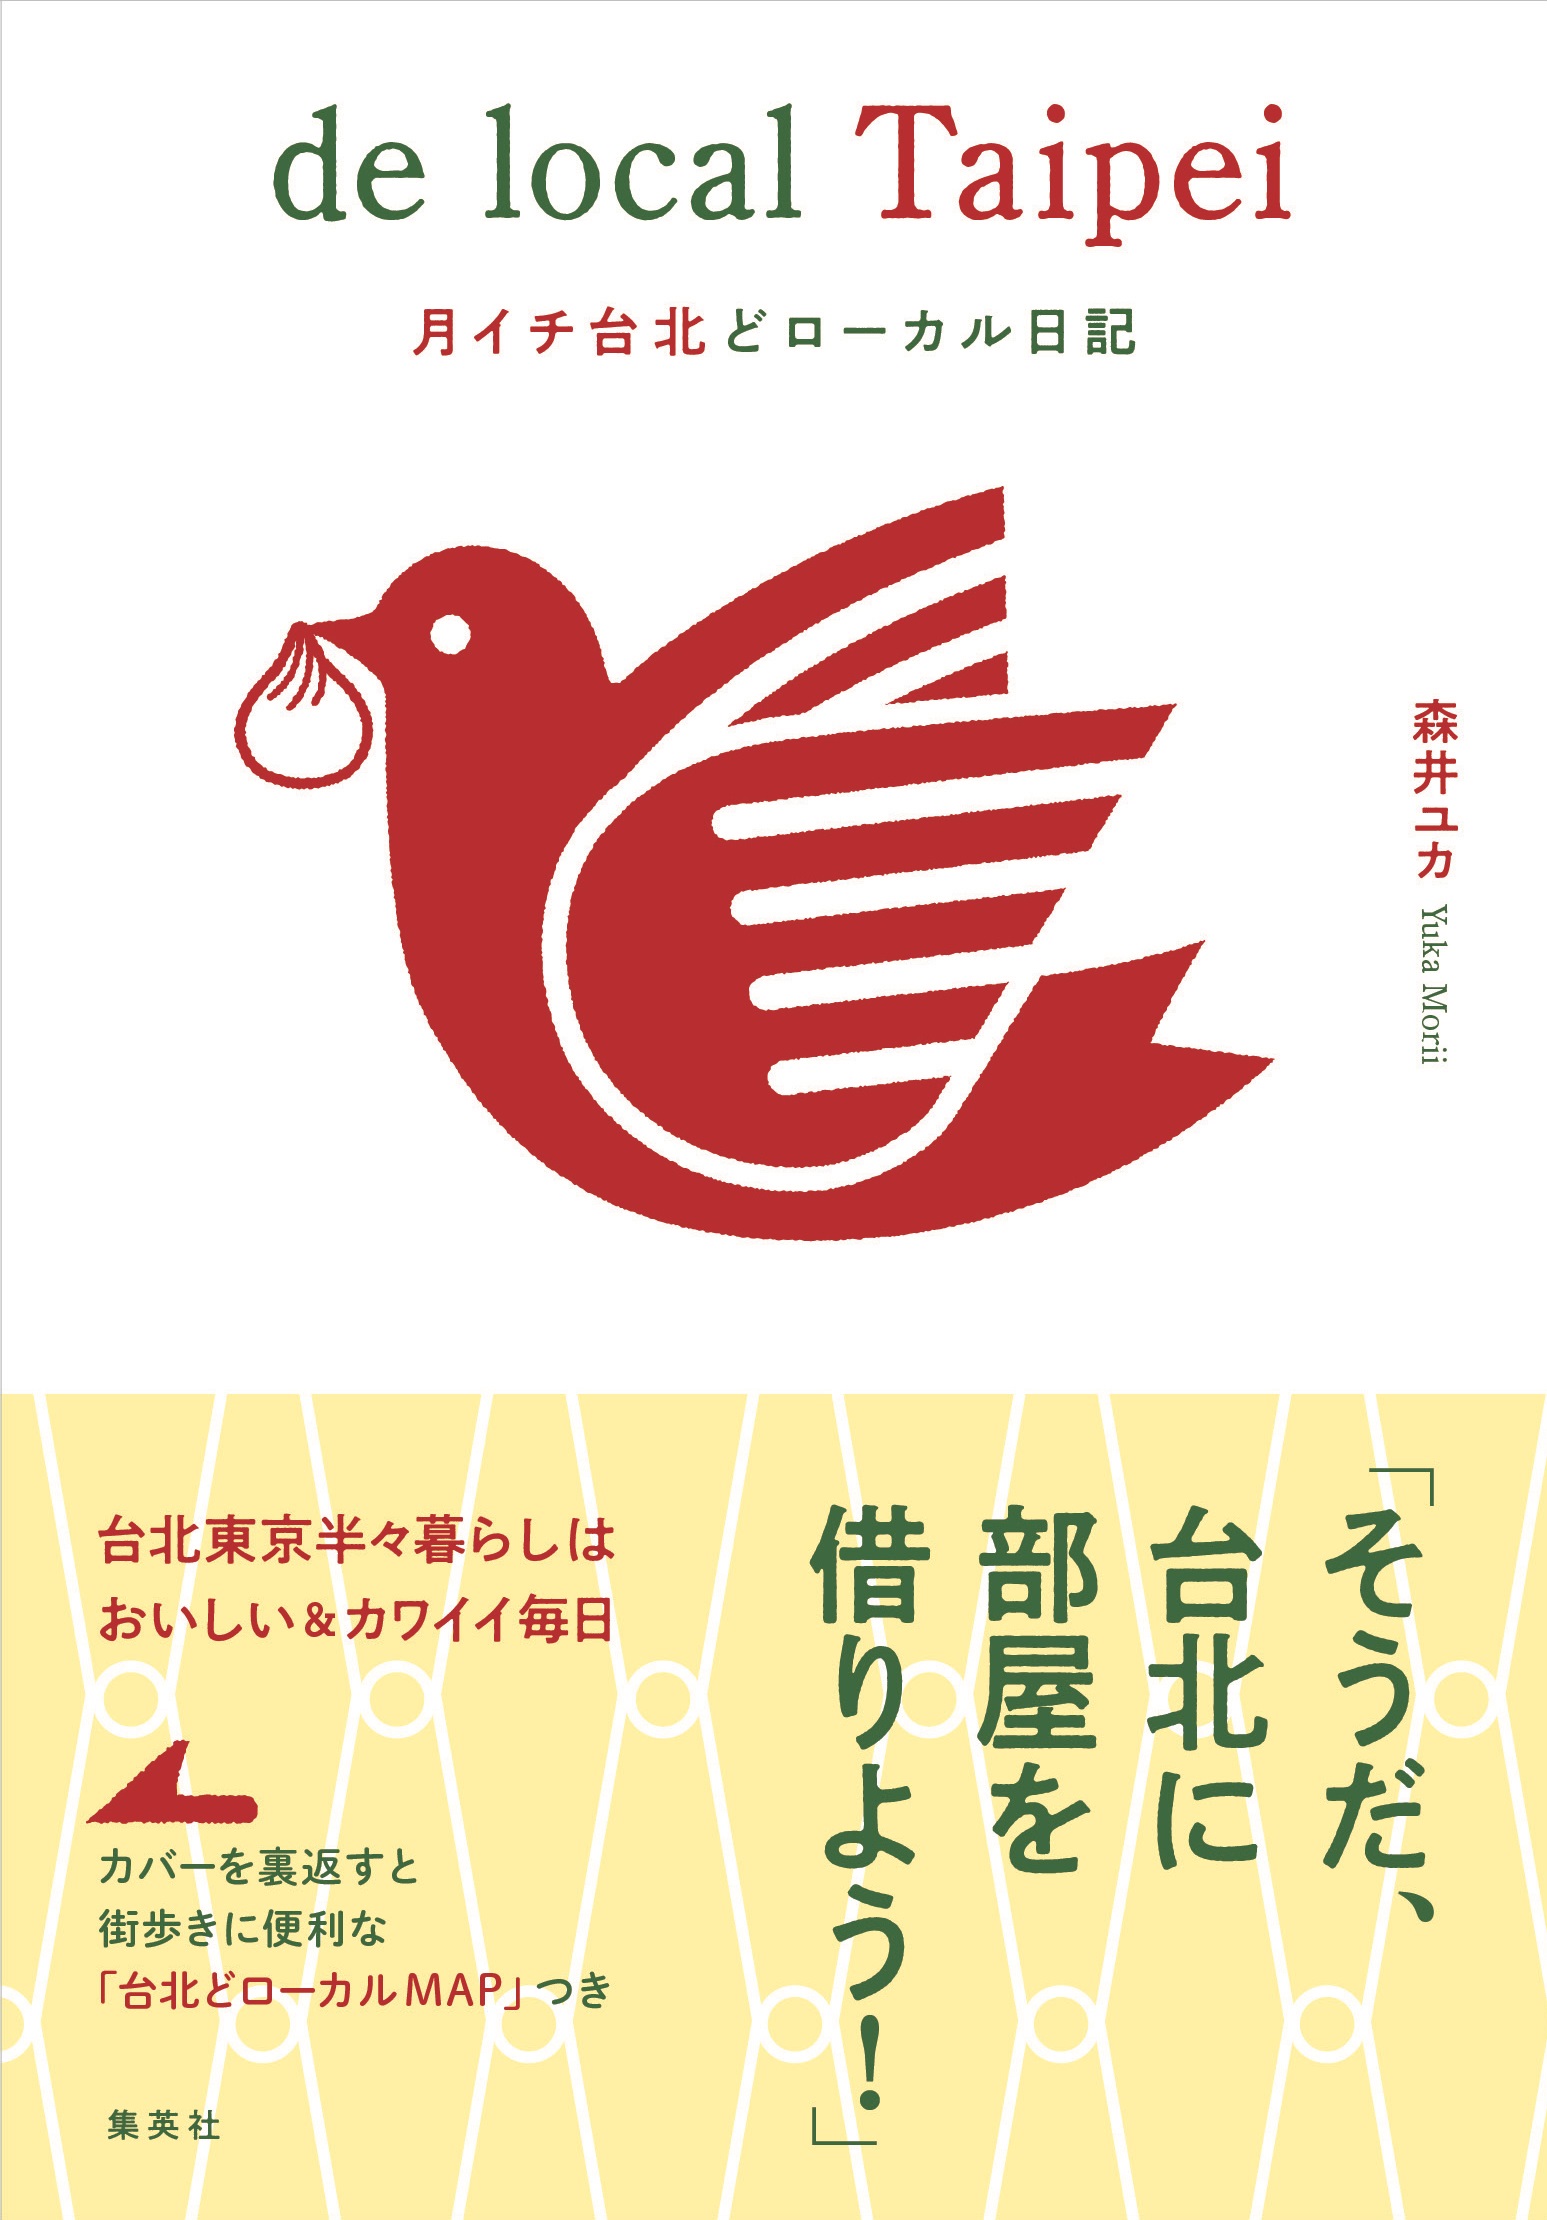 森井ユカ先生の書籍「de local Taipei」